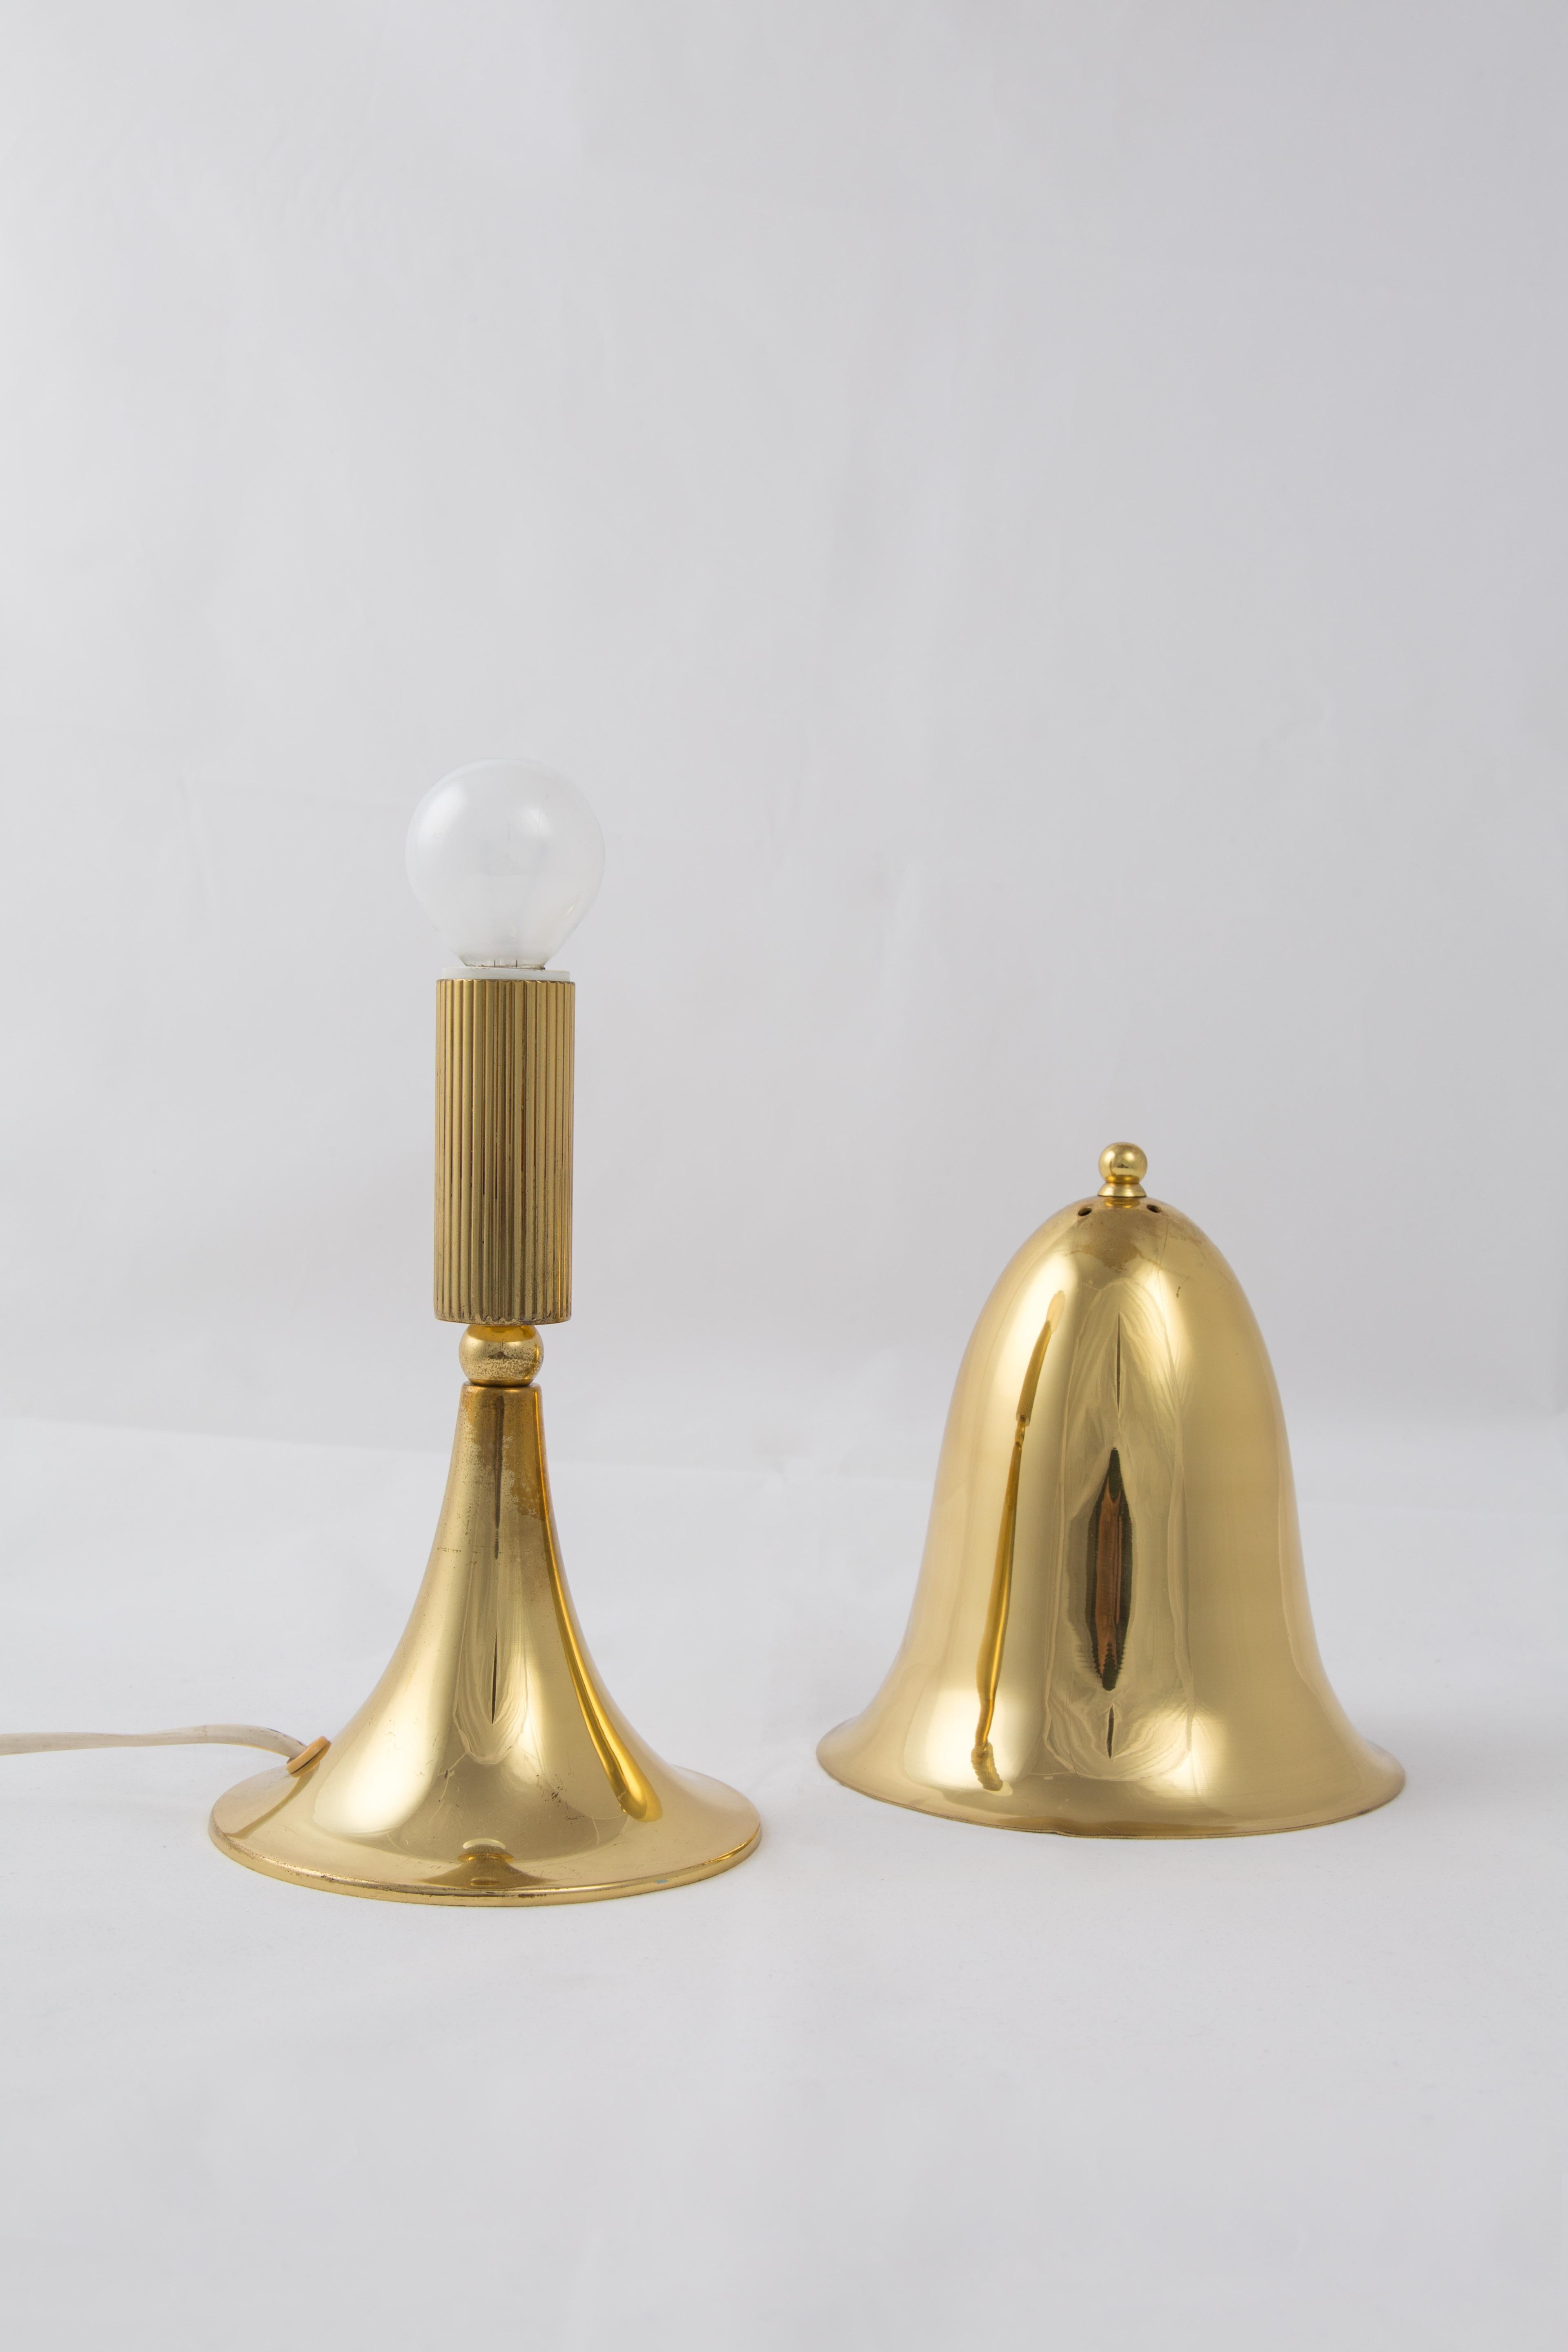 Solve Carlsson Helsingborg Brass Mushroom Lamp 1